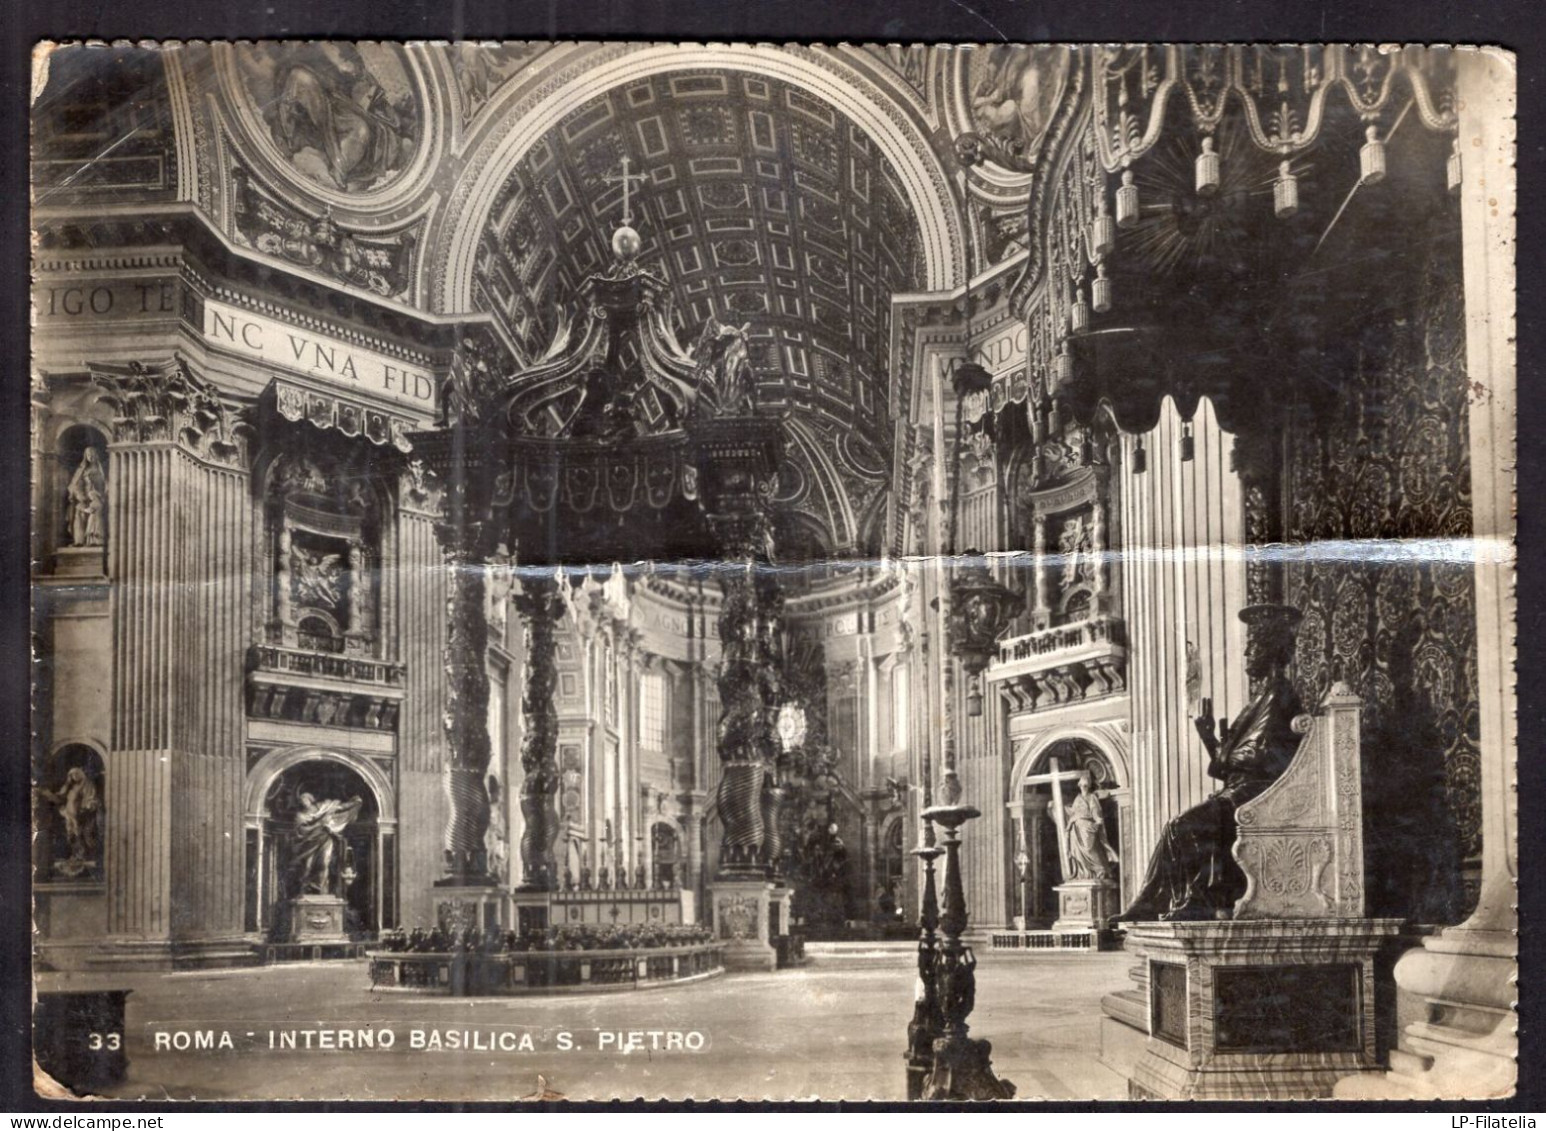 Italy - 1949 - Roma - Interno Basilica S. Pietro - San Pietro